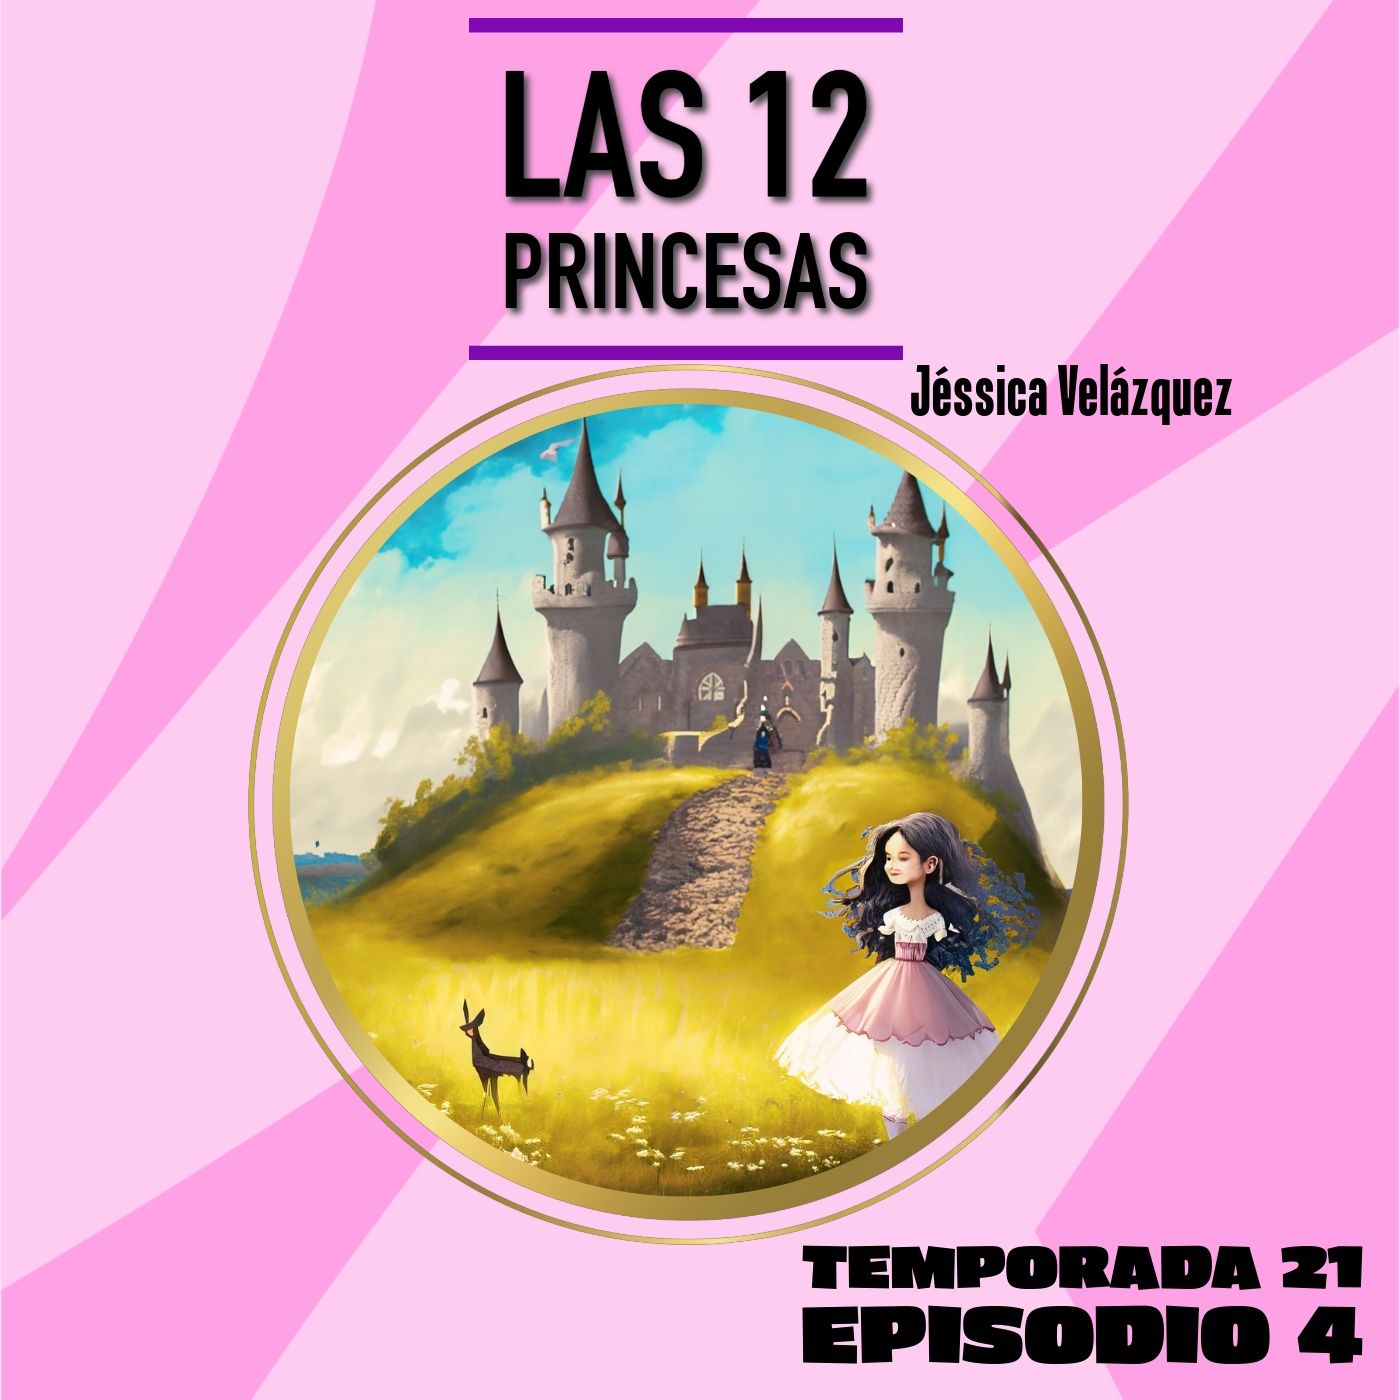 Cuento infantil: Las 12 princesas - Temporada 21 Episodio 4